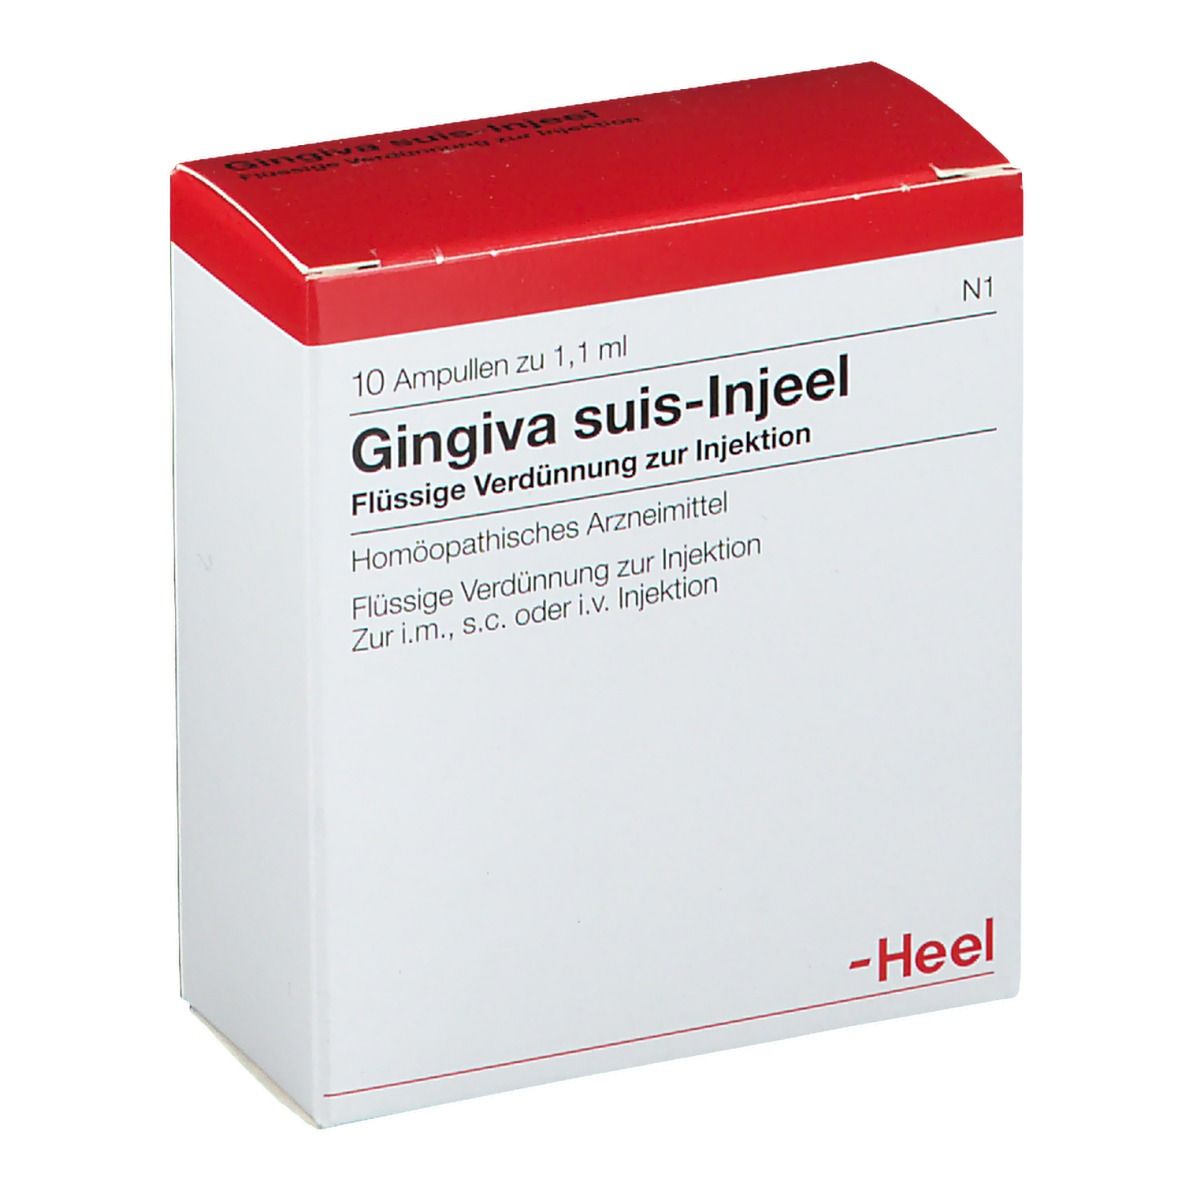 Gingiva suis-Injeel® Ampullen